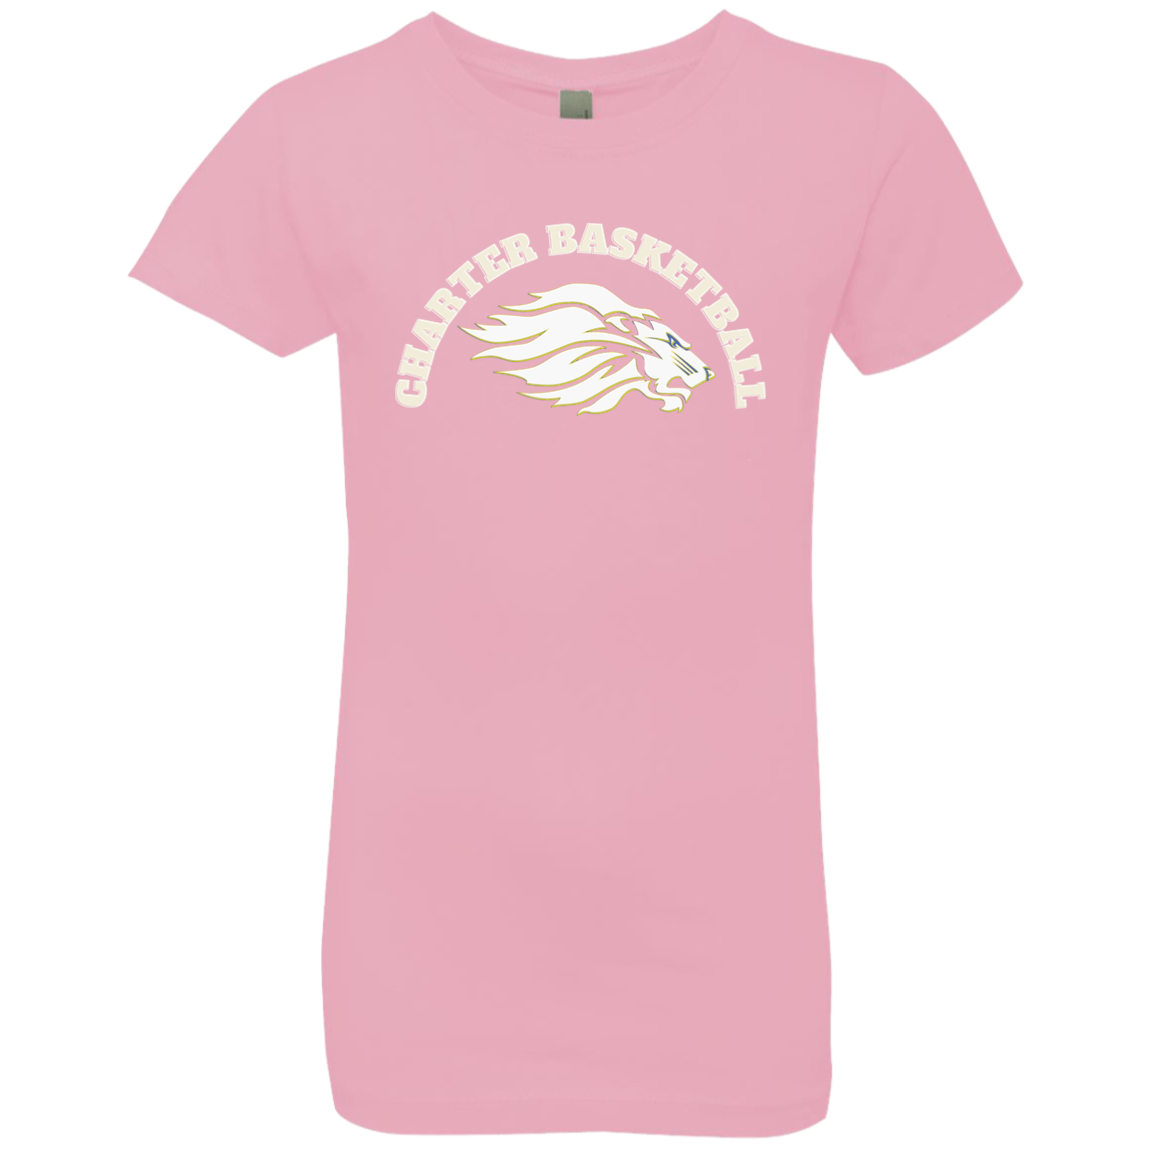 Charter Basketball Girls' Princess T-Shirt